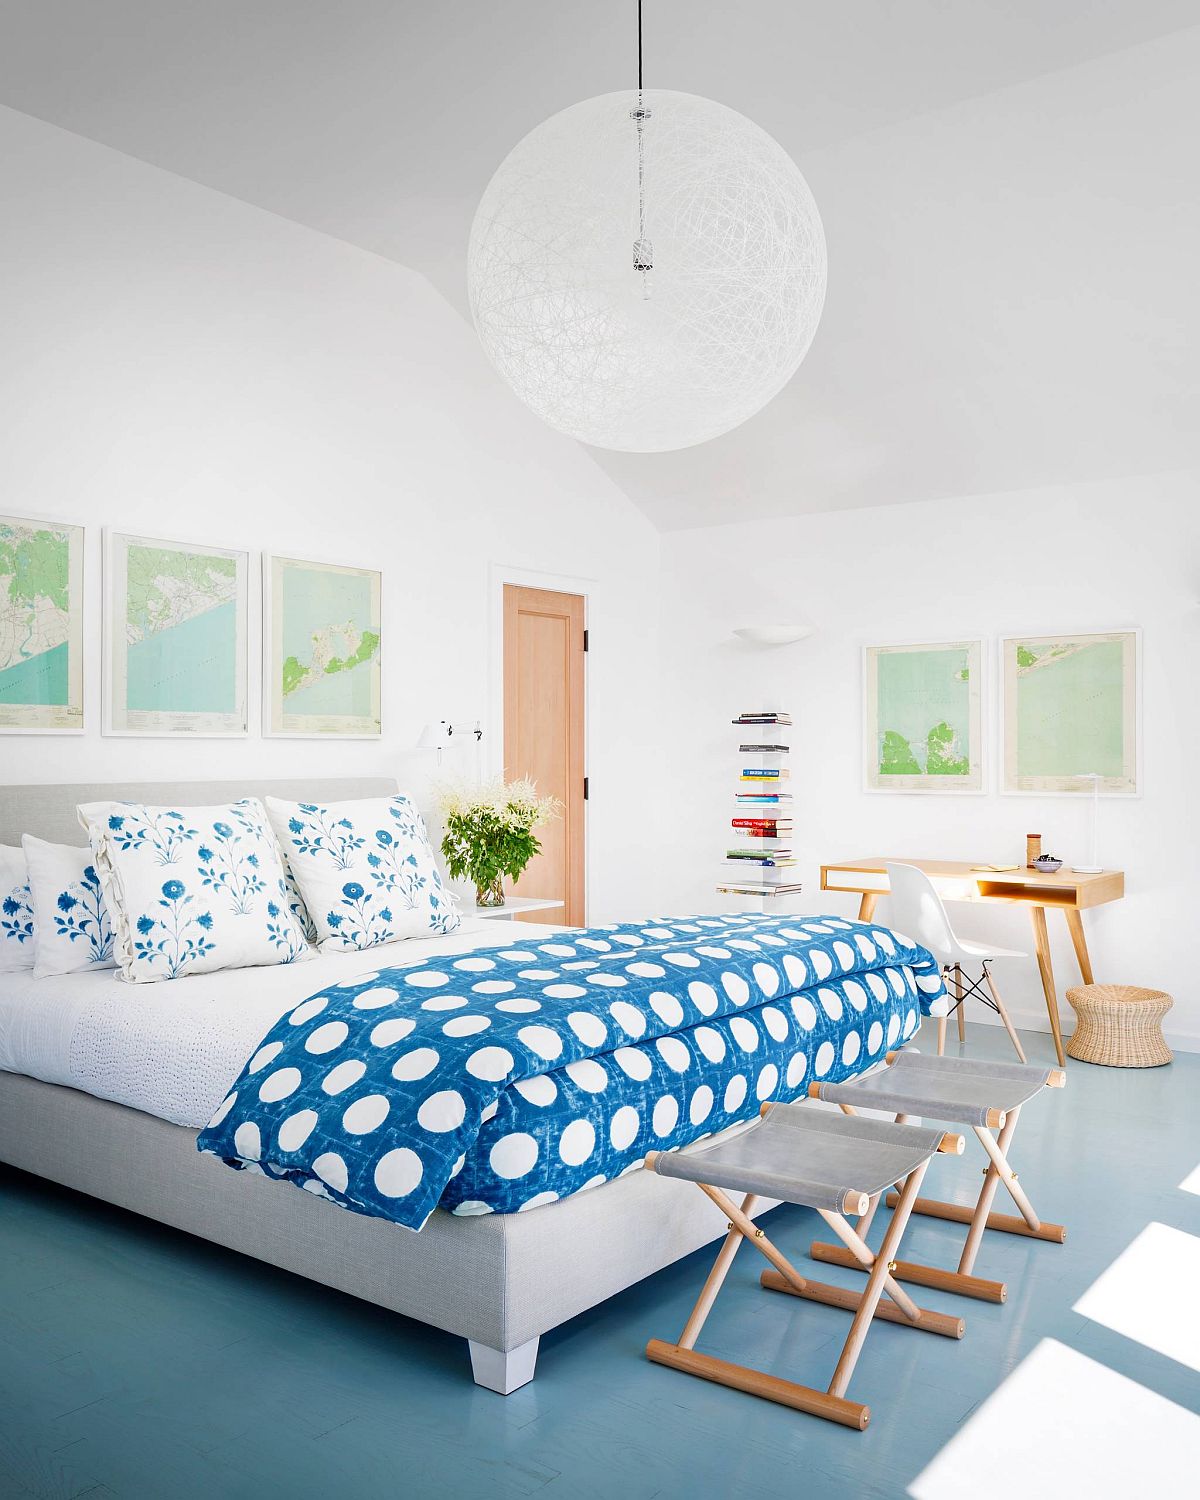 Hình ảnh phòng ngủ phong cách bãi biển với gam màu xanh dương chủ đạo, gối họa tiết hoa bắt mắt, phụ kiện trang trí là bản đồ